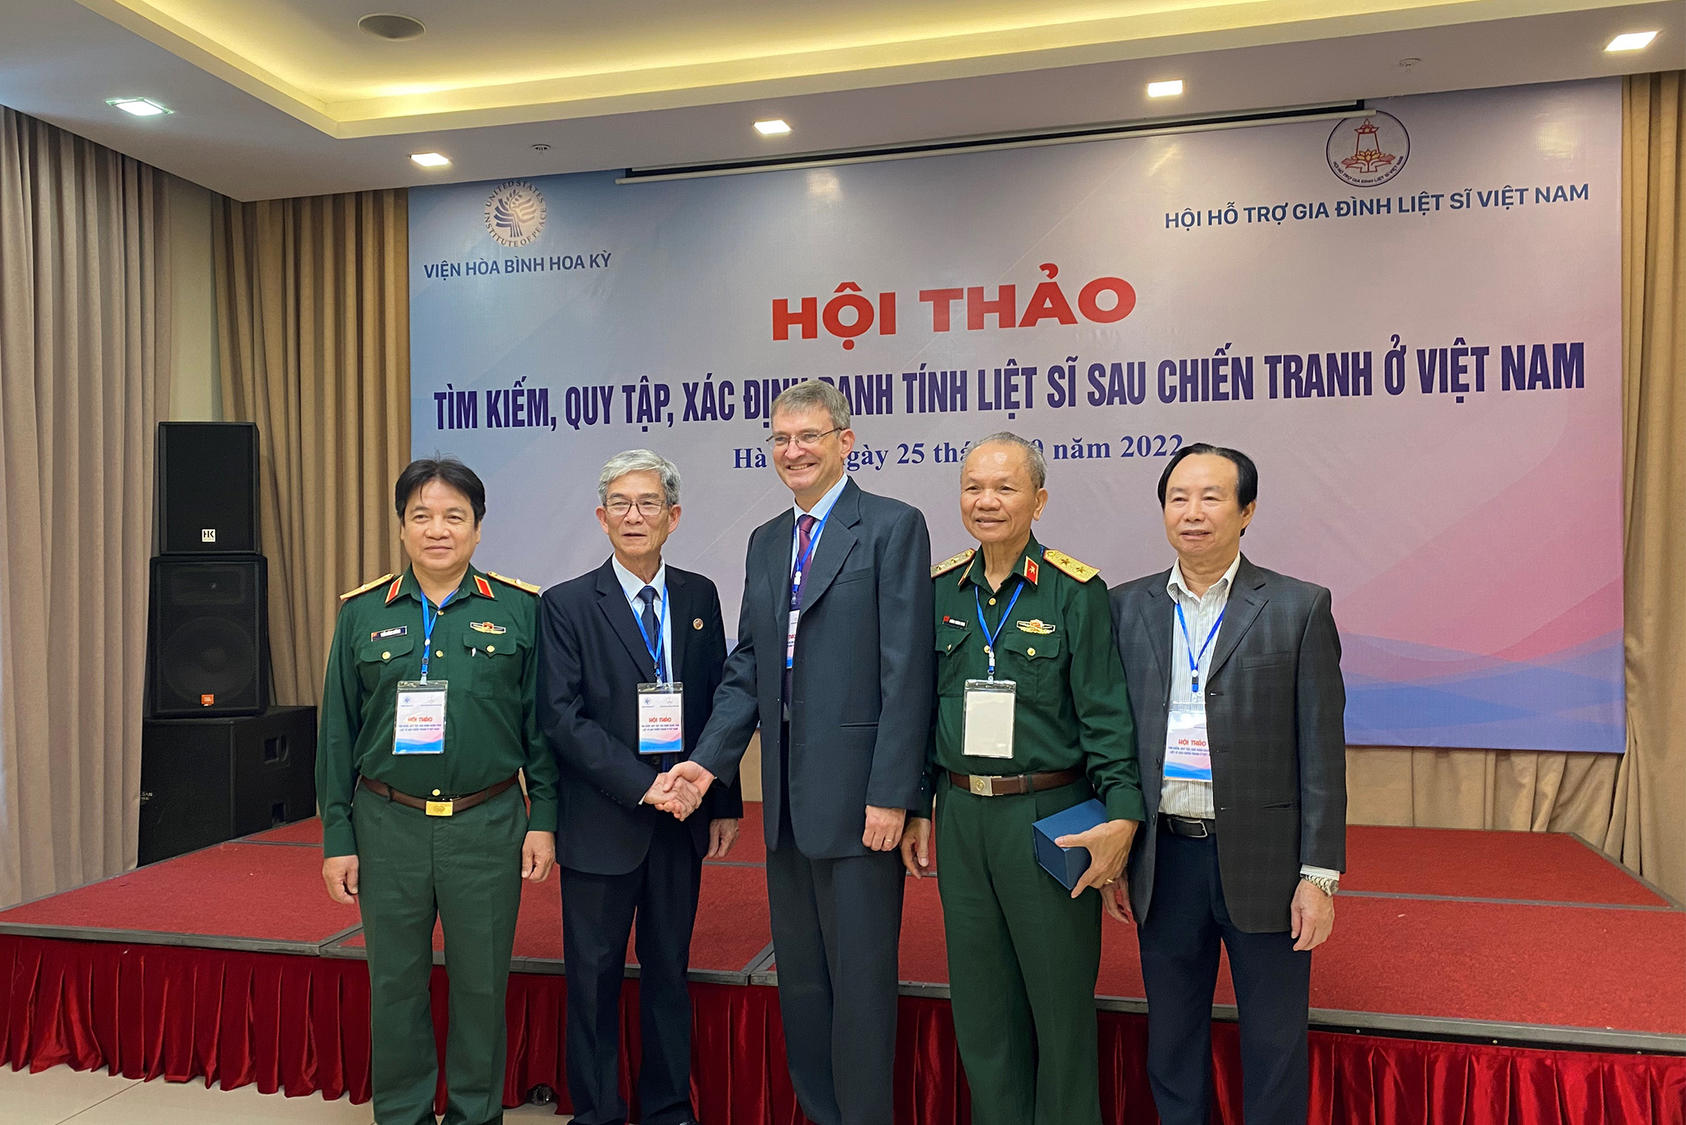 VMFSA leaders with USIP Senior Expert Andrew Wells-Dang, Hanoi, Vietnam, October 2022